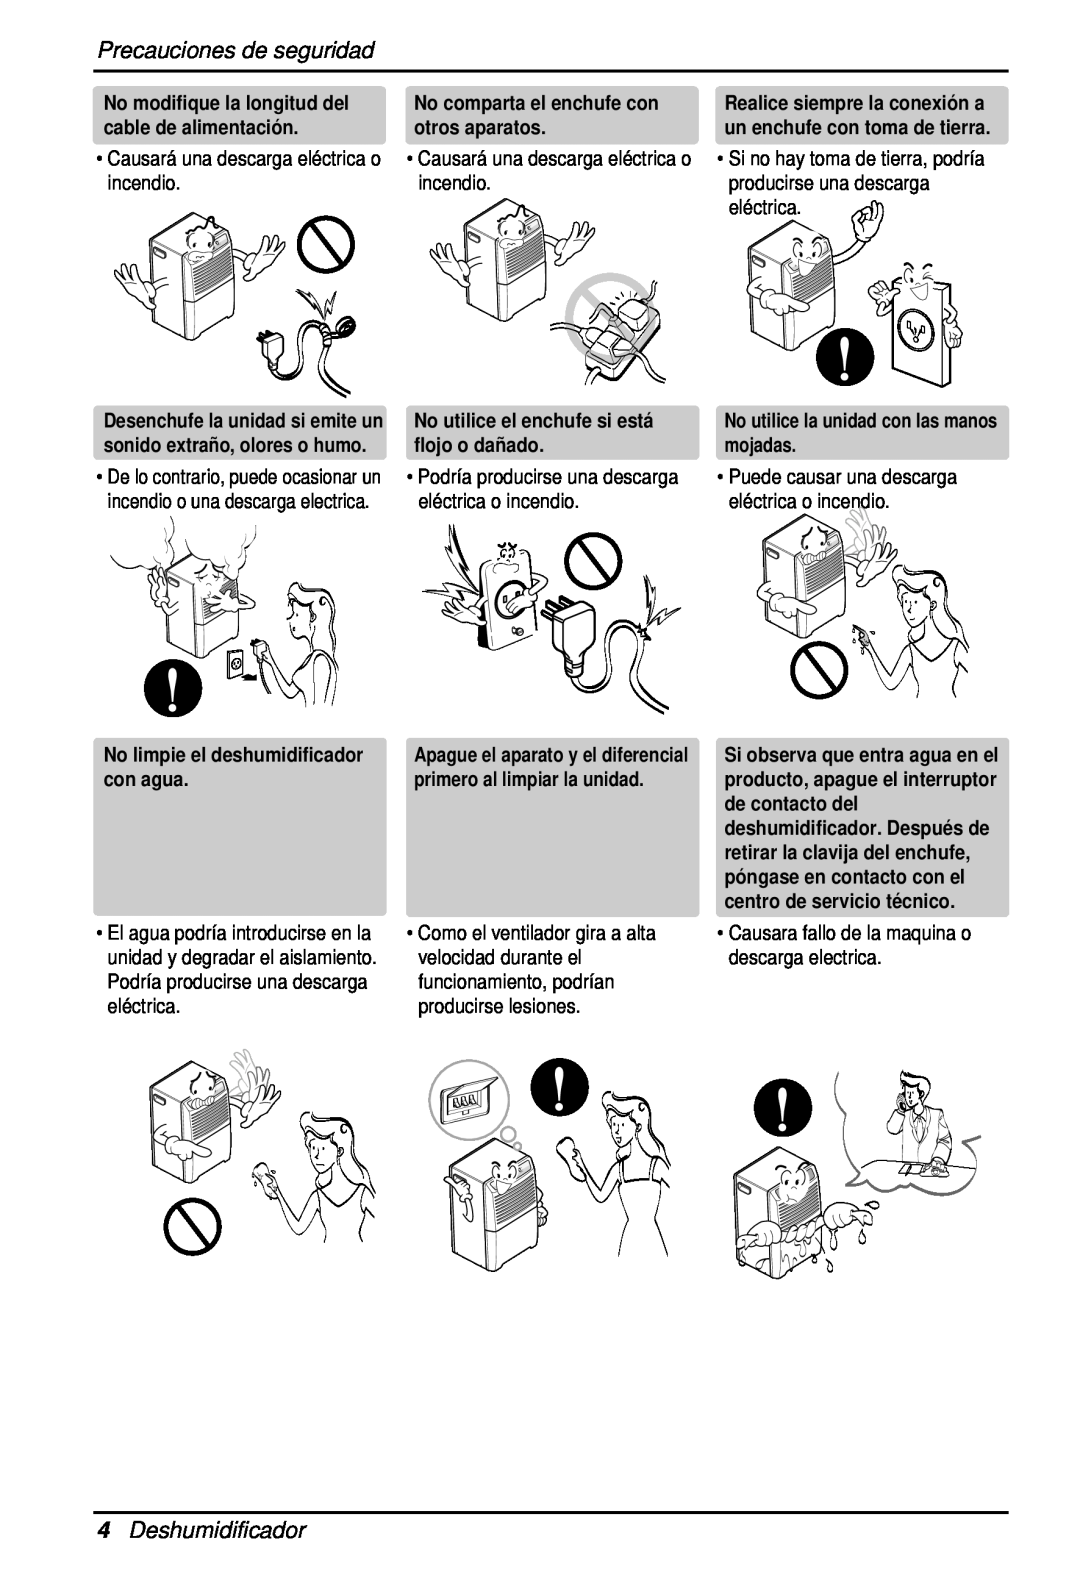 Heat Controller BHD-301 manual Precauciones de seguridad, 4Deshumidificador, No comparta el enchufe con otros aparatos 